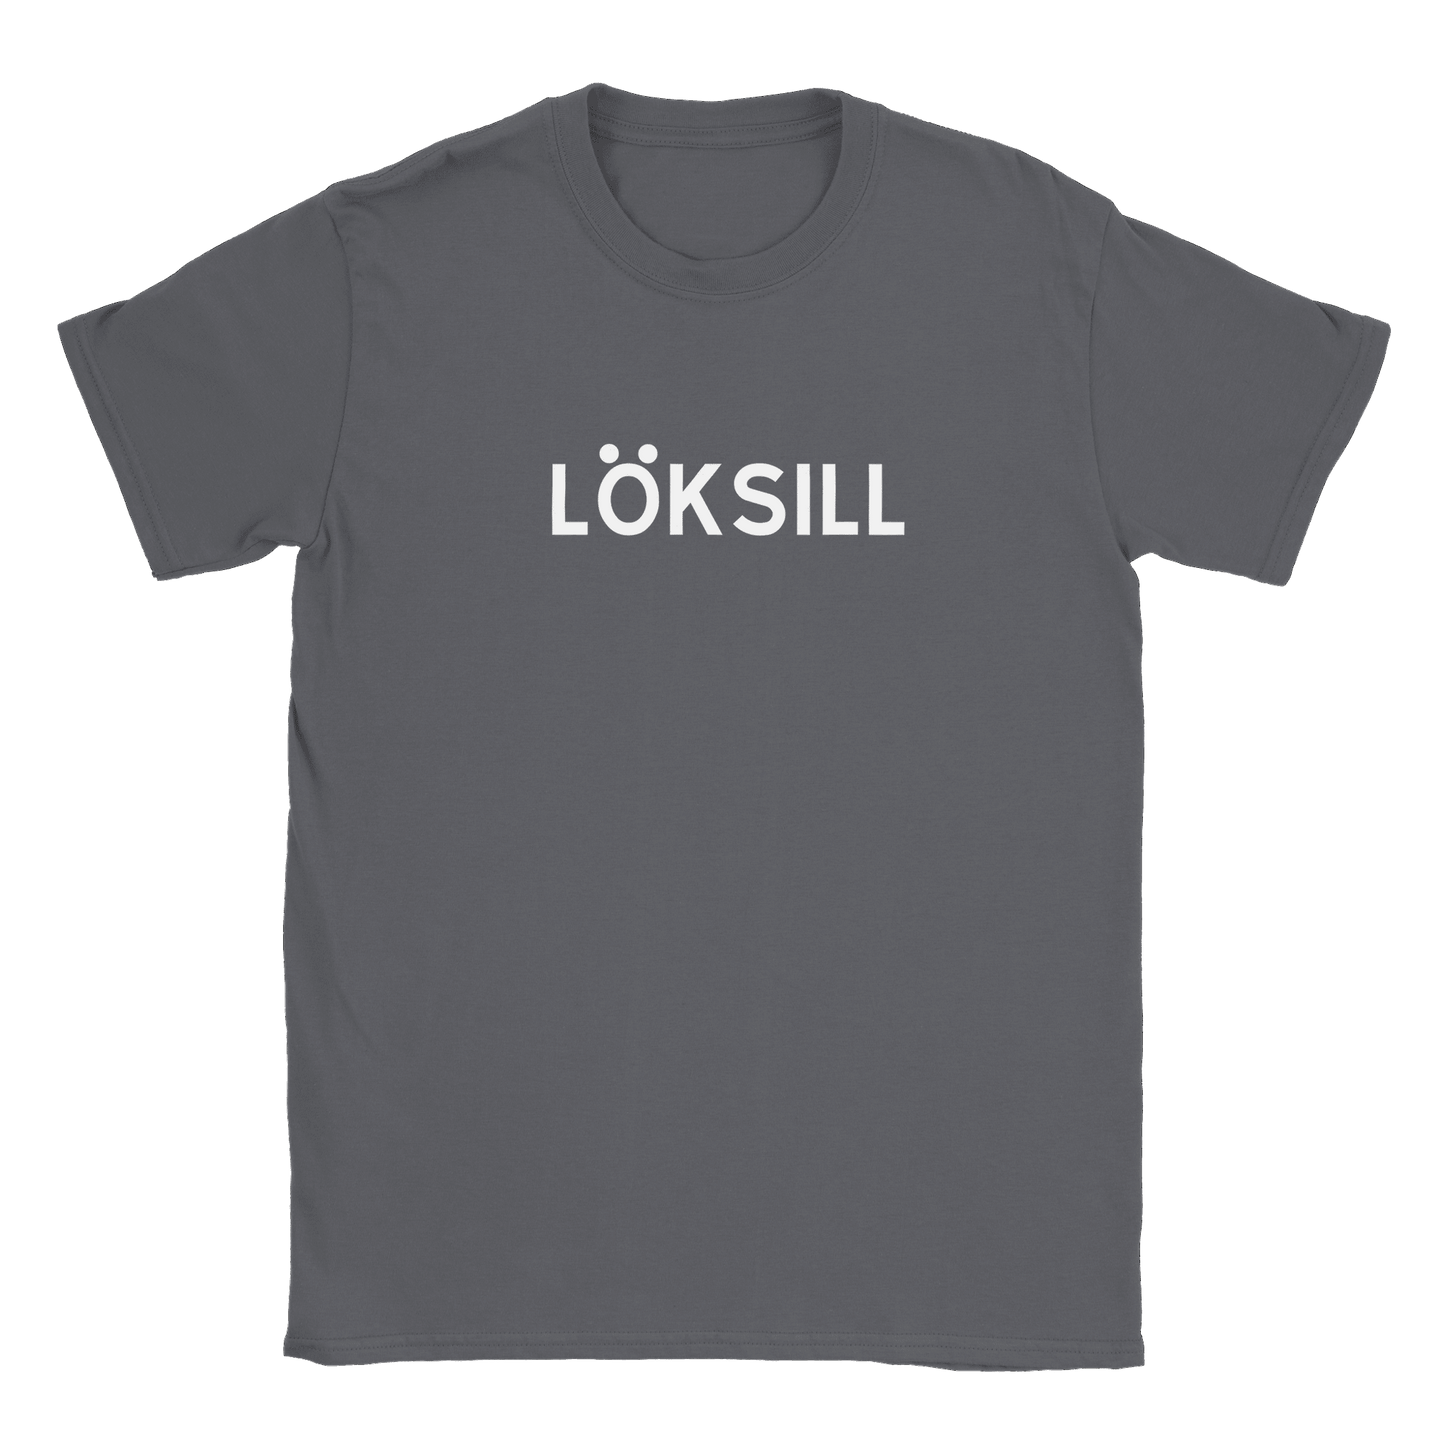 Löksill - T-shirt Charcoal